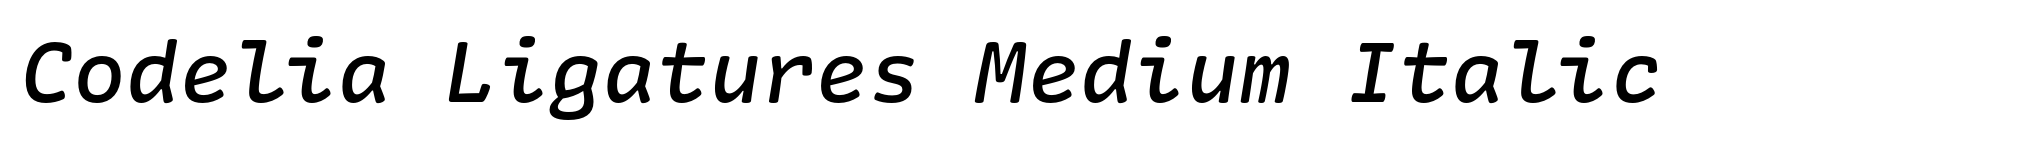 Codelia Ligatures Medium Italic image